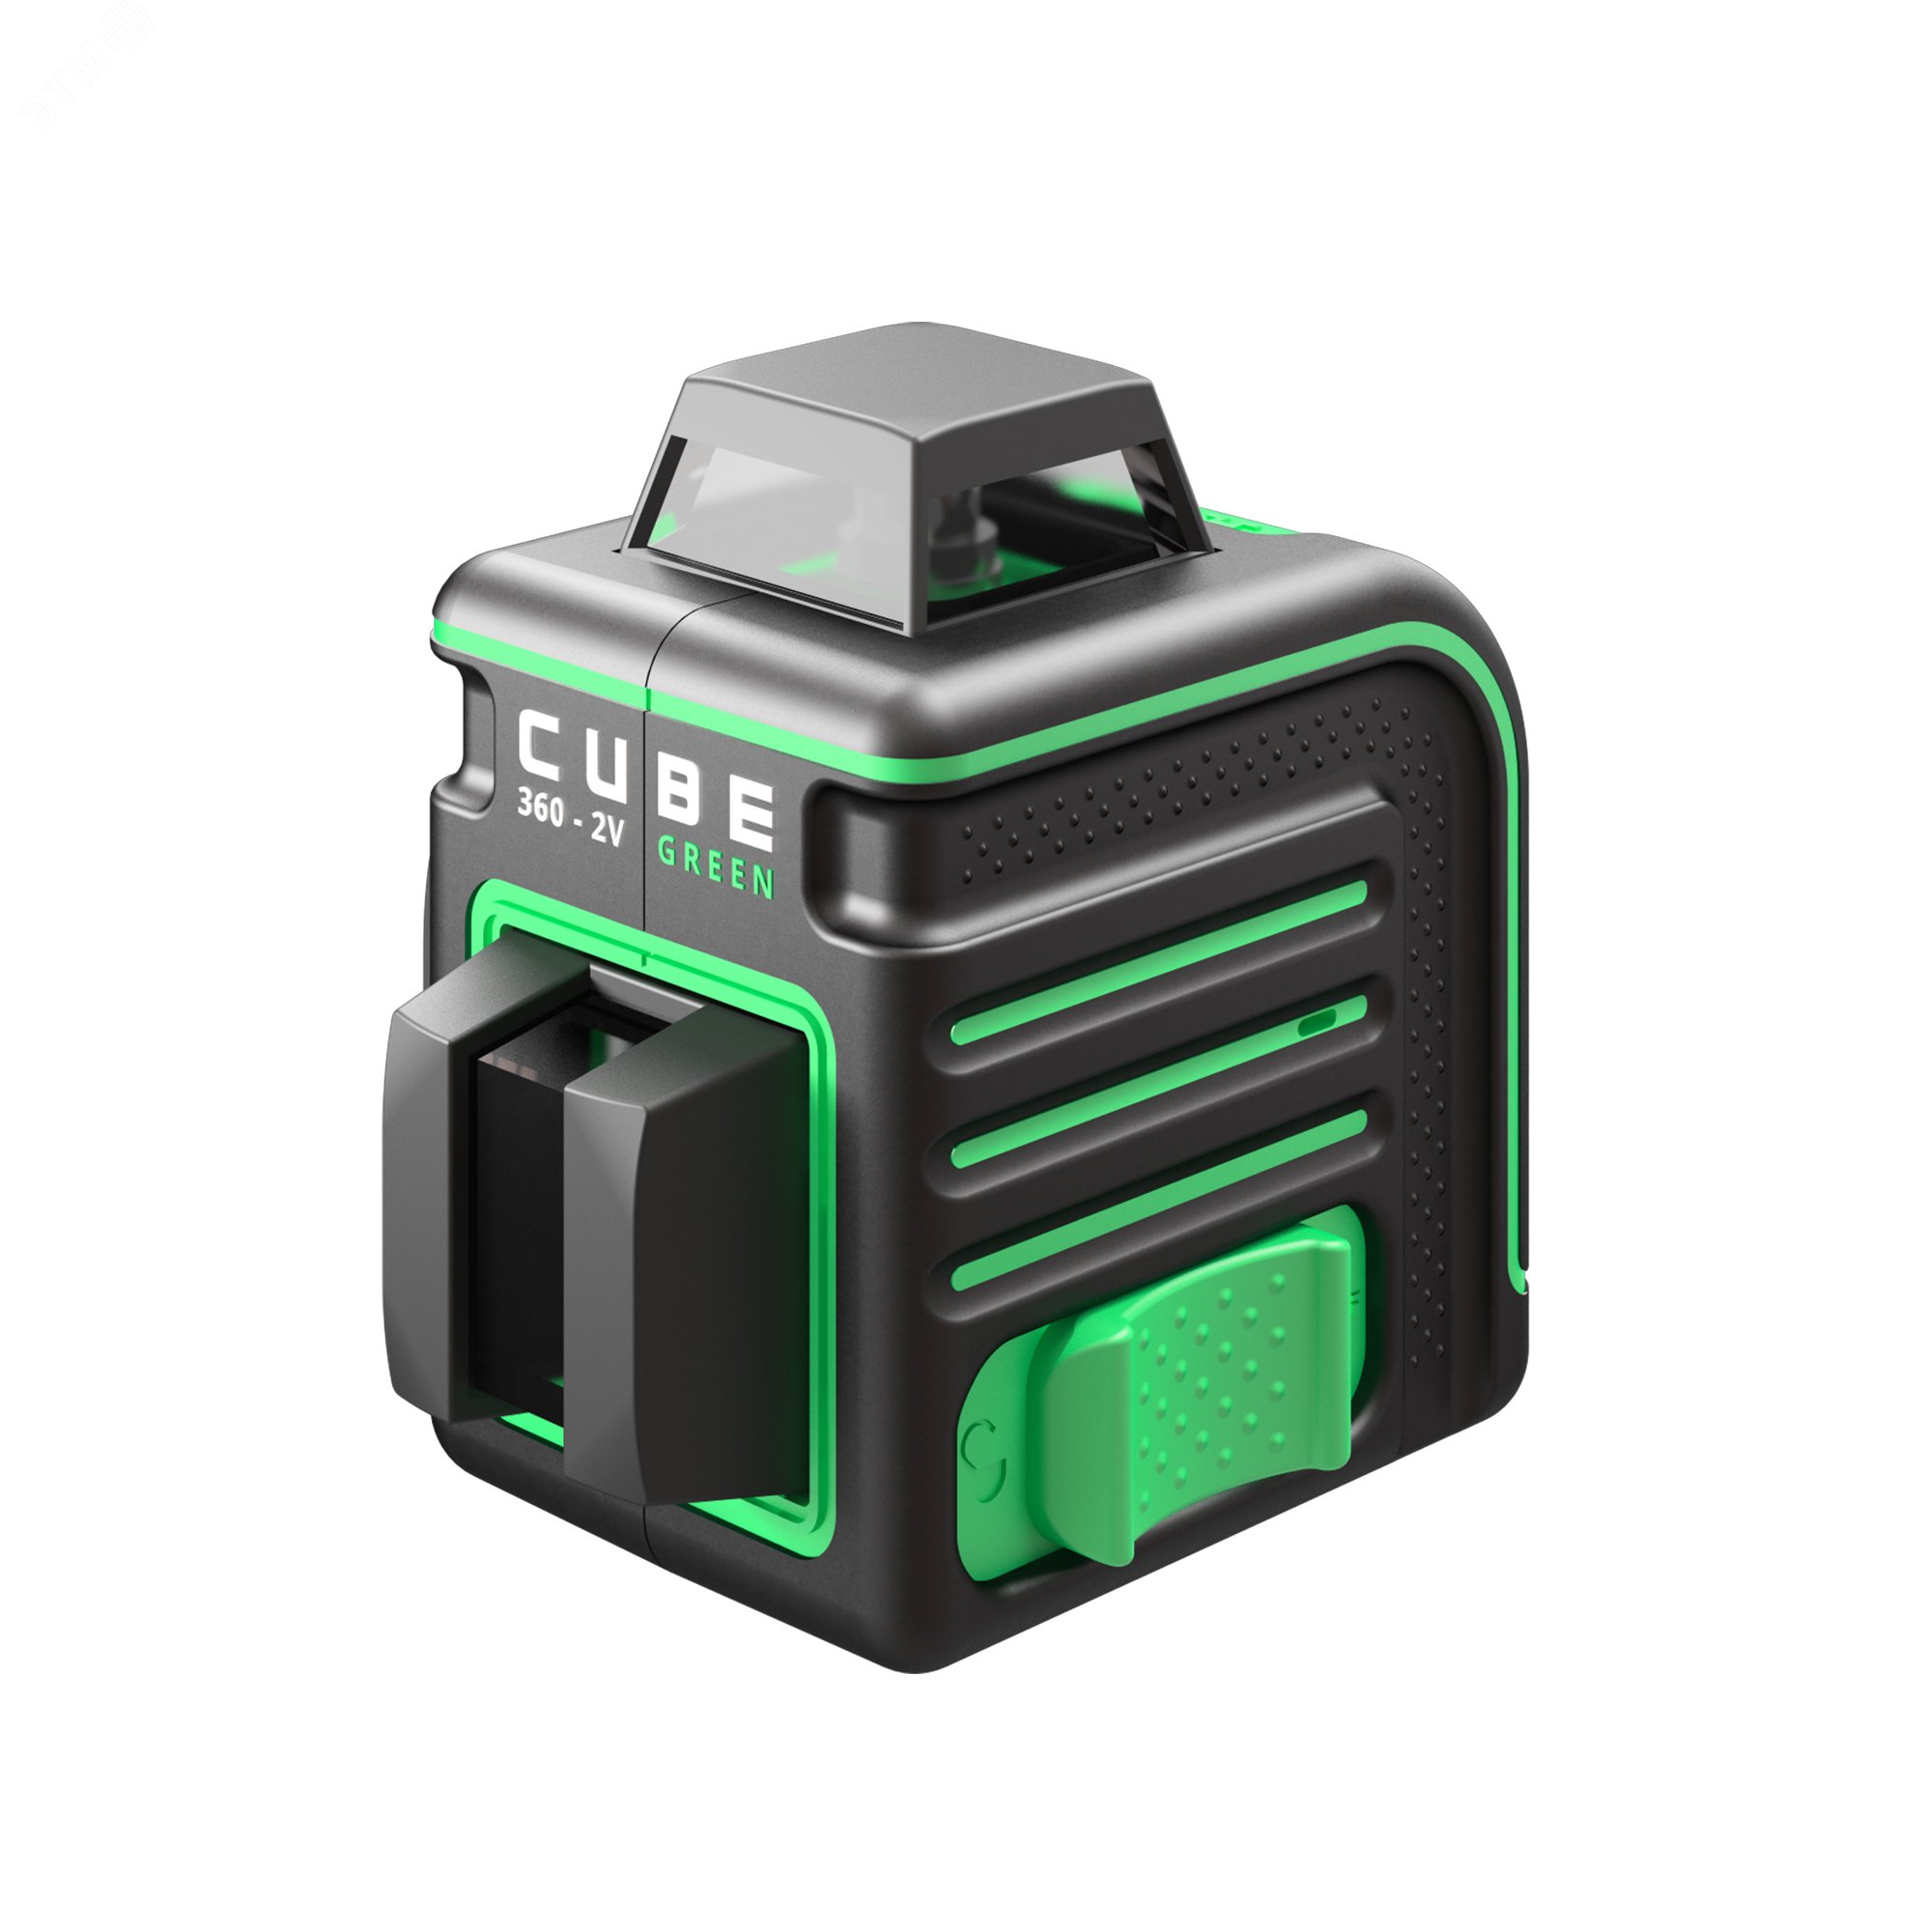 Уровень лазерный Cube 360-2V GREEN Professional Edition А00571 ADA - превью 4